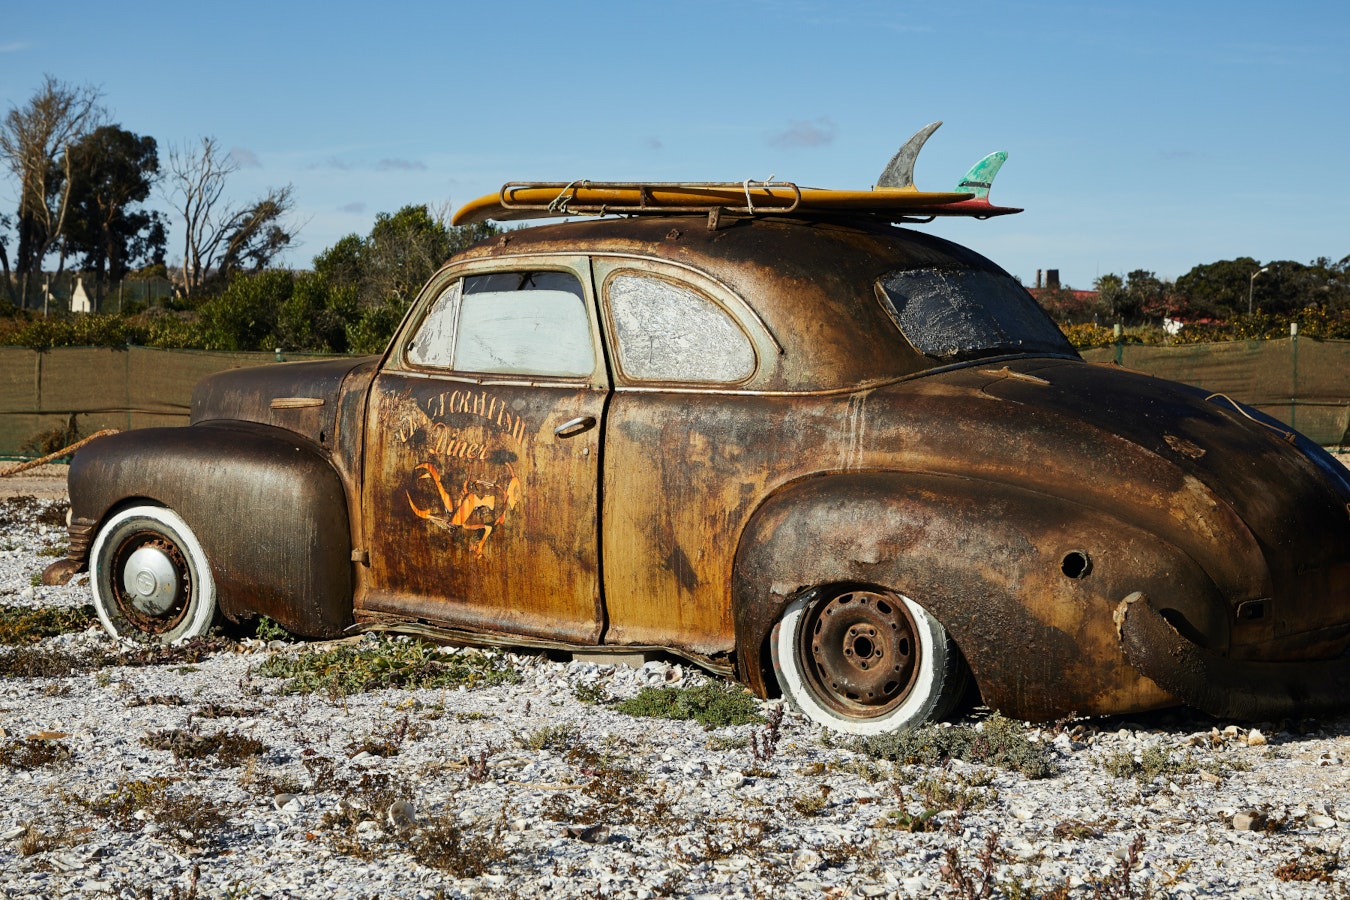 A rusty car sitting on a beach with a surf board